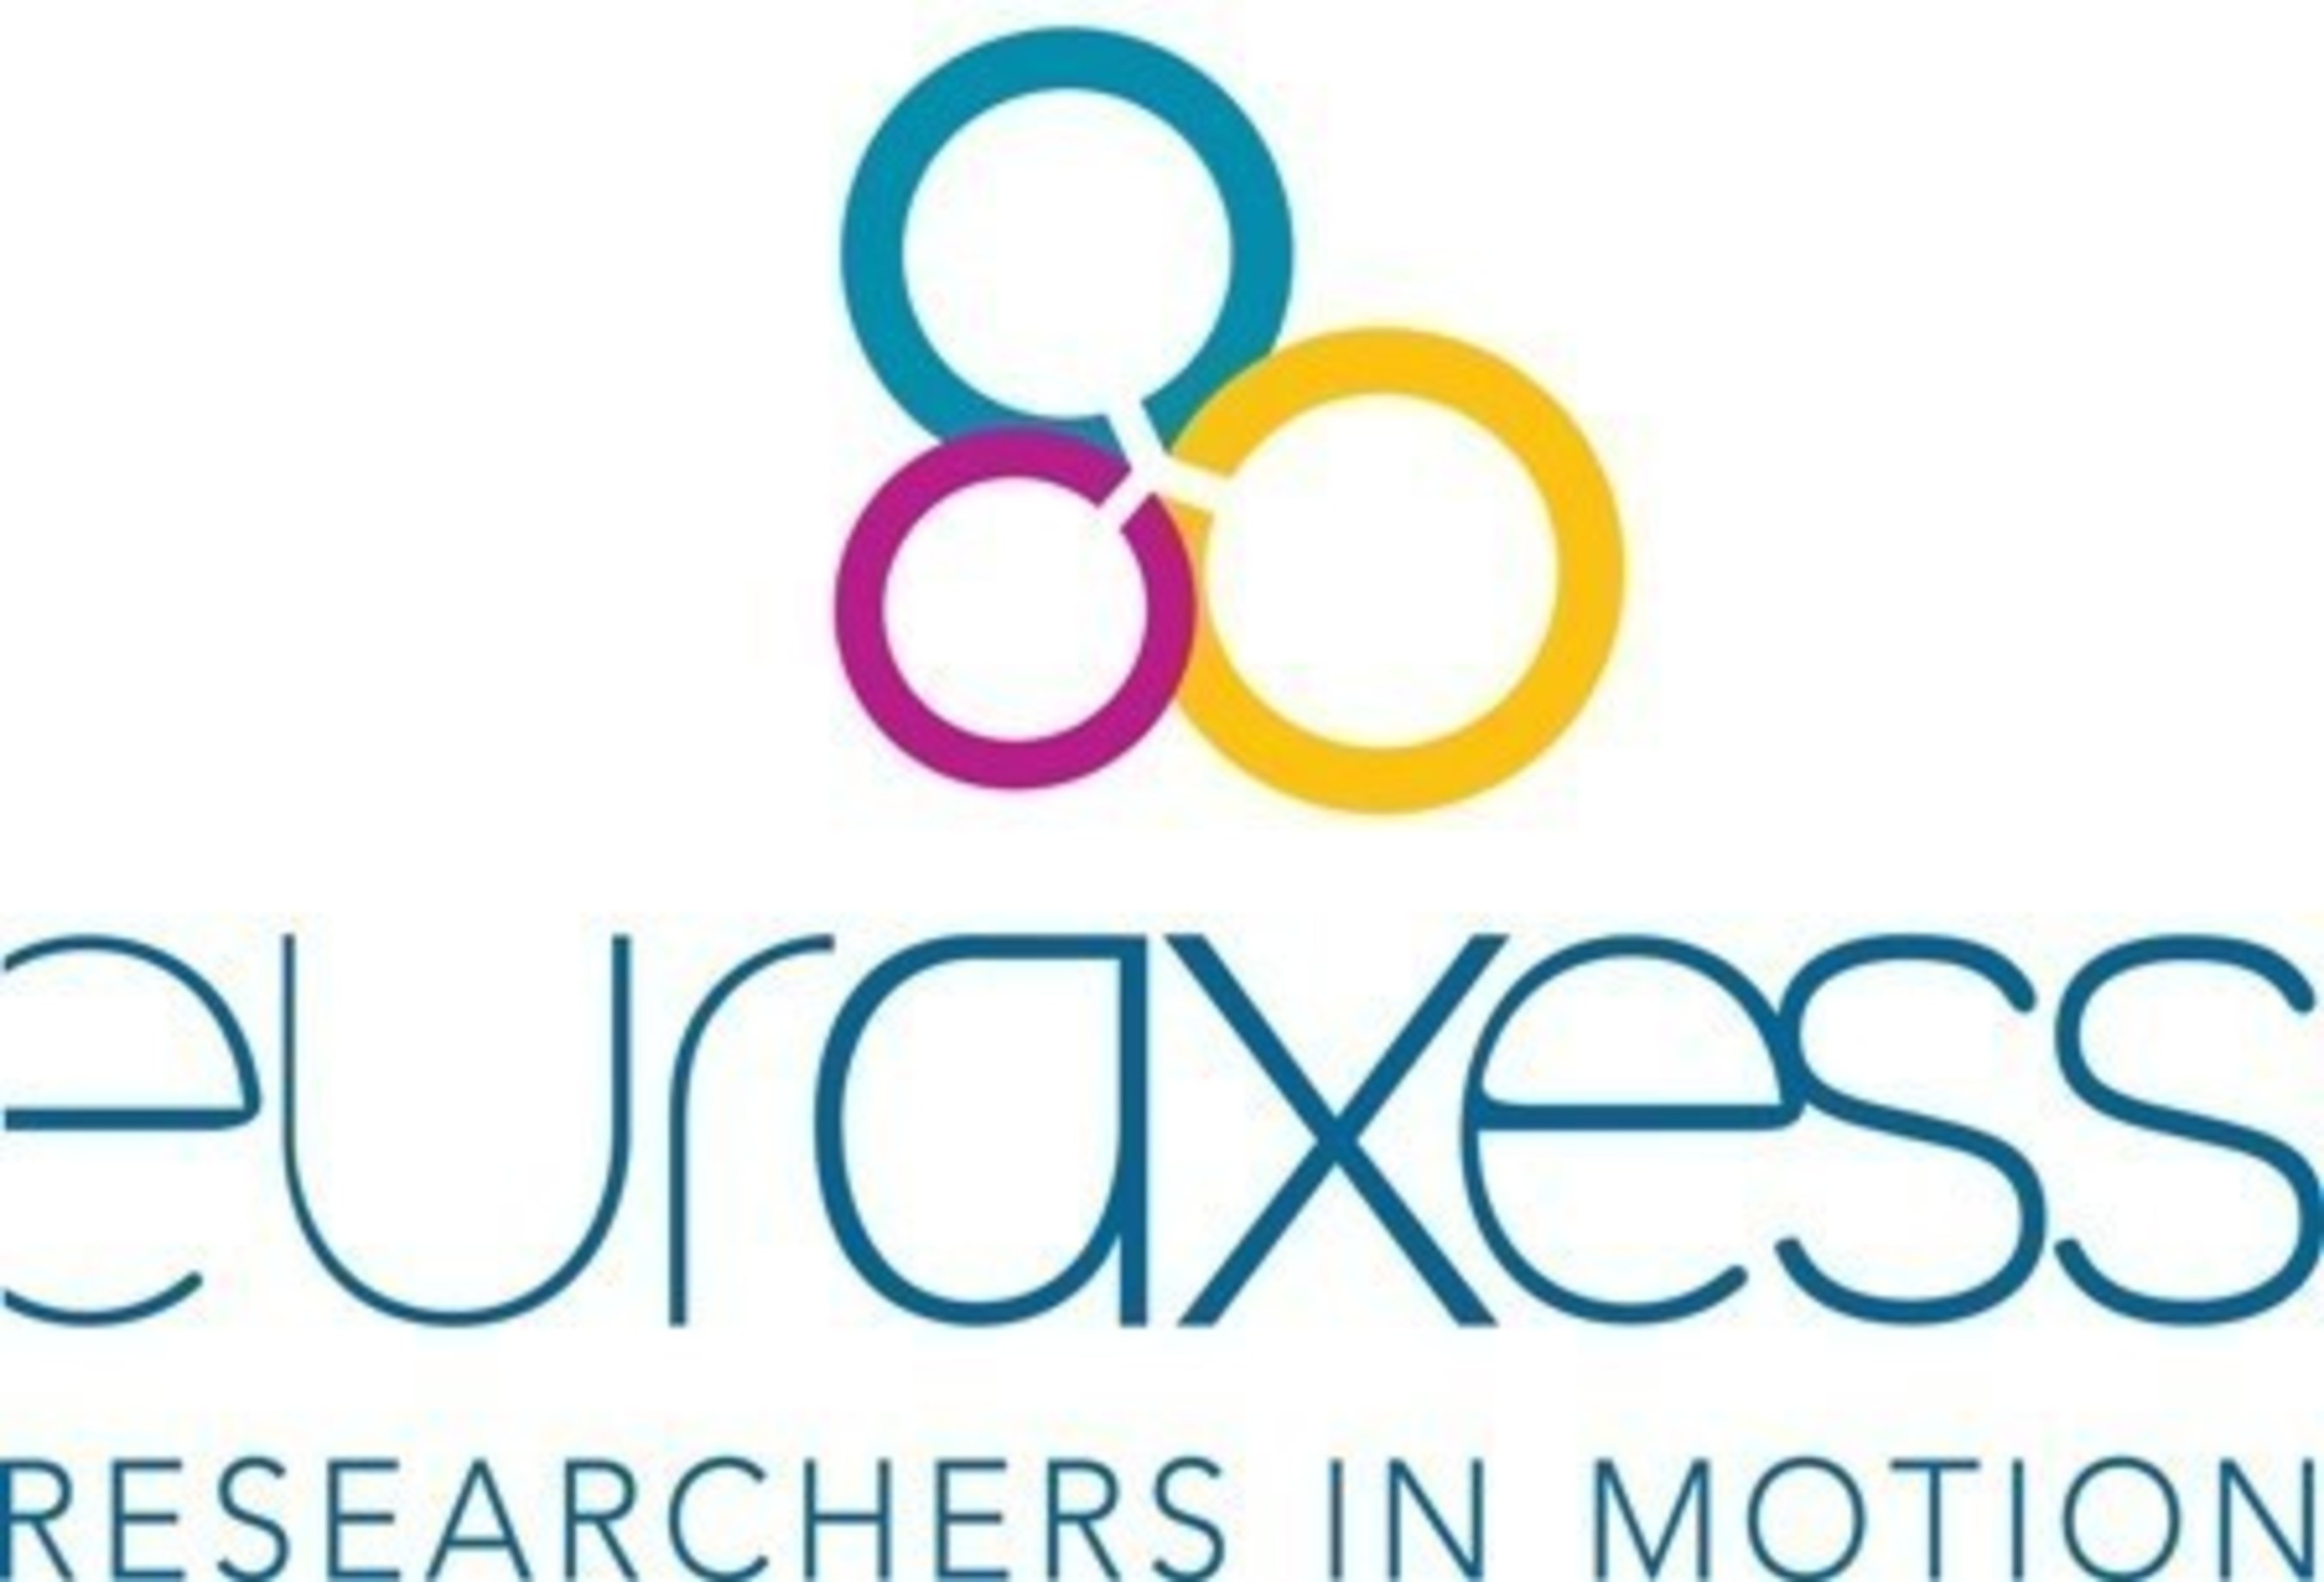 EURAXESS Logo